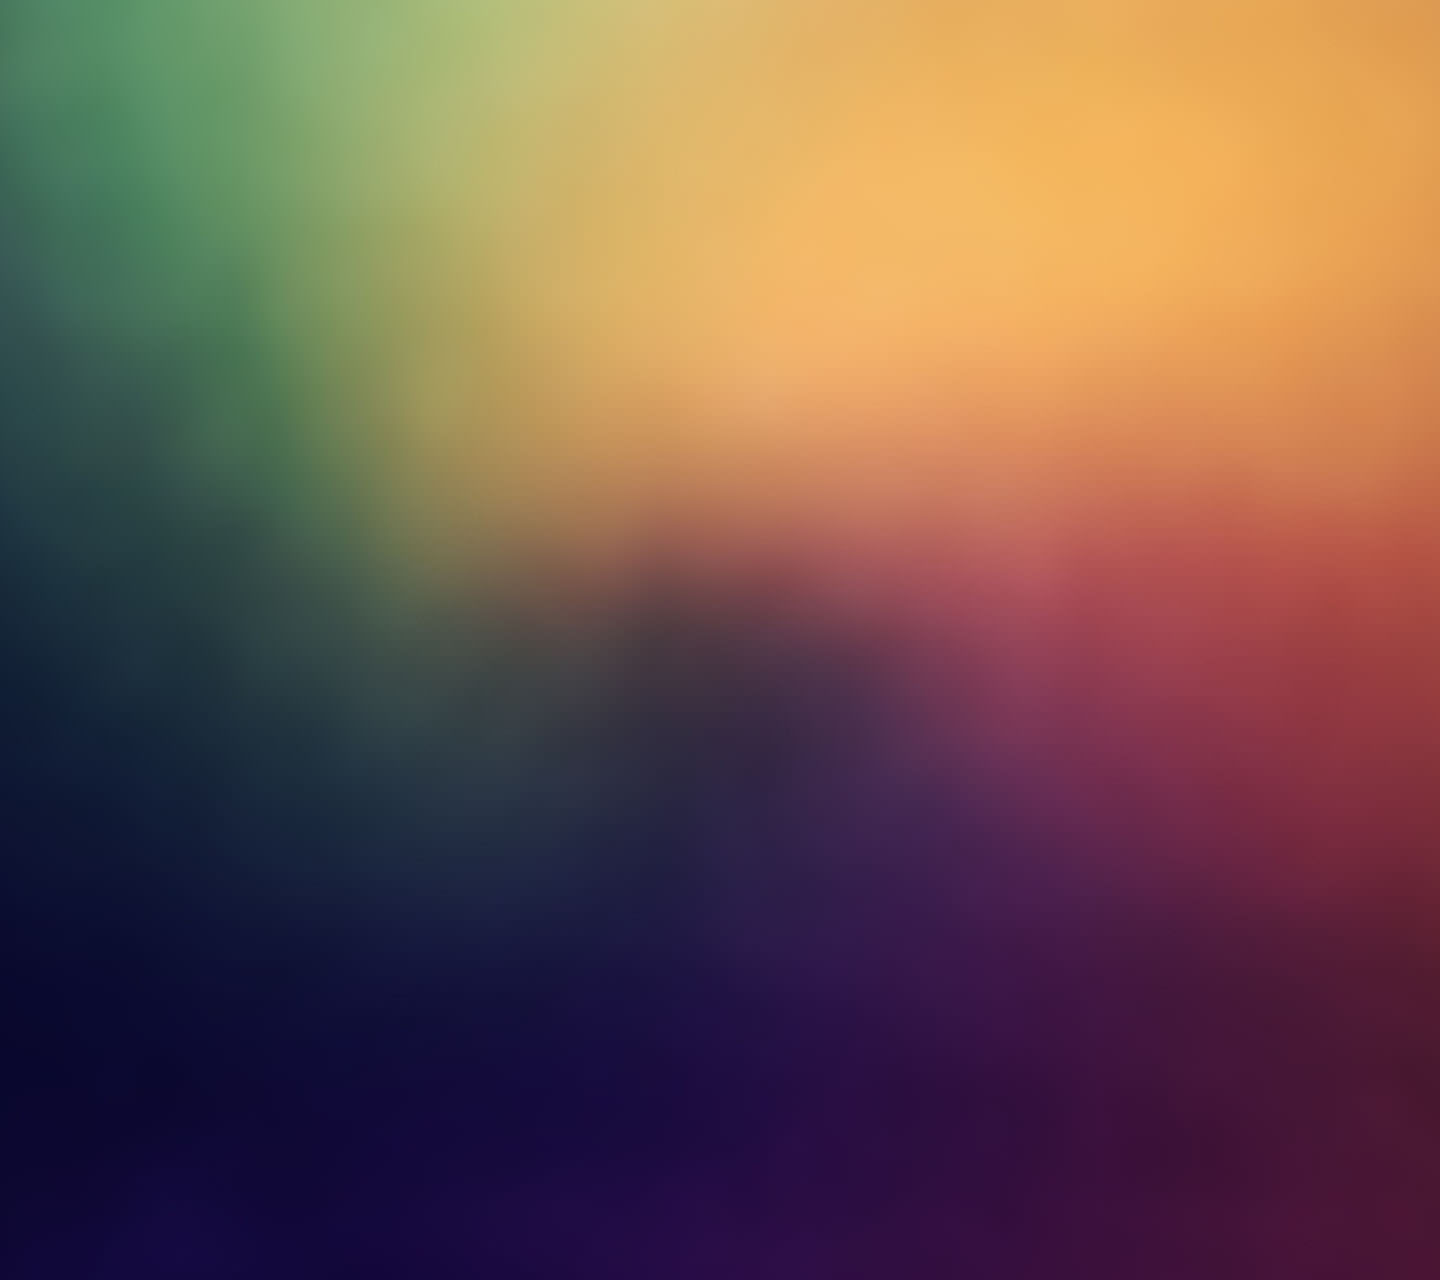 淡い虹色グラデーション Androidスマホ用壁紙